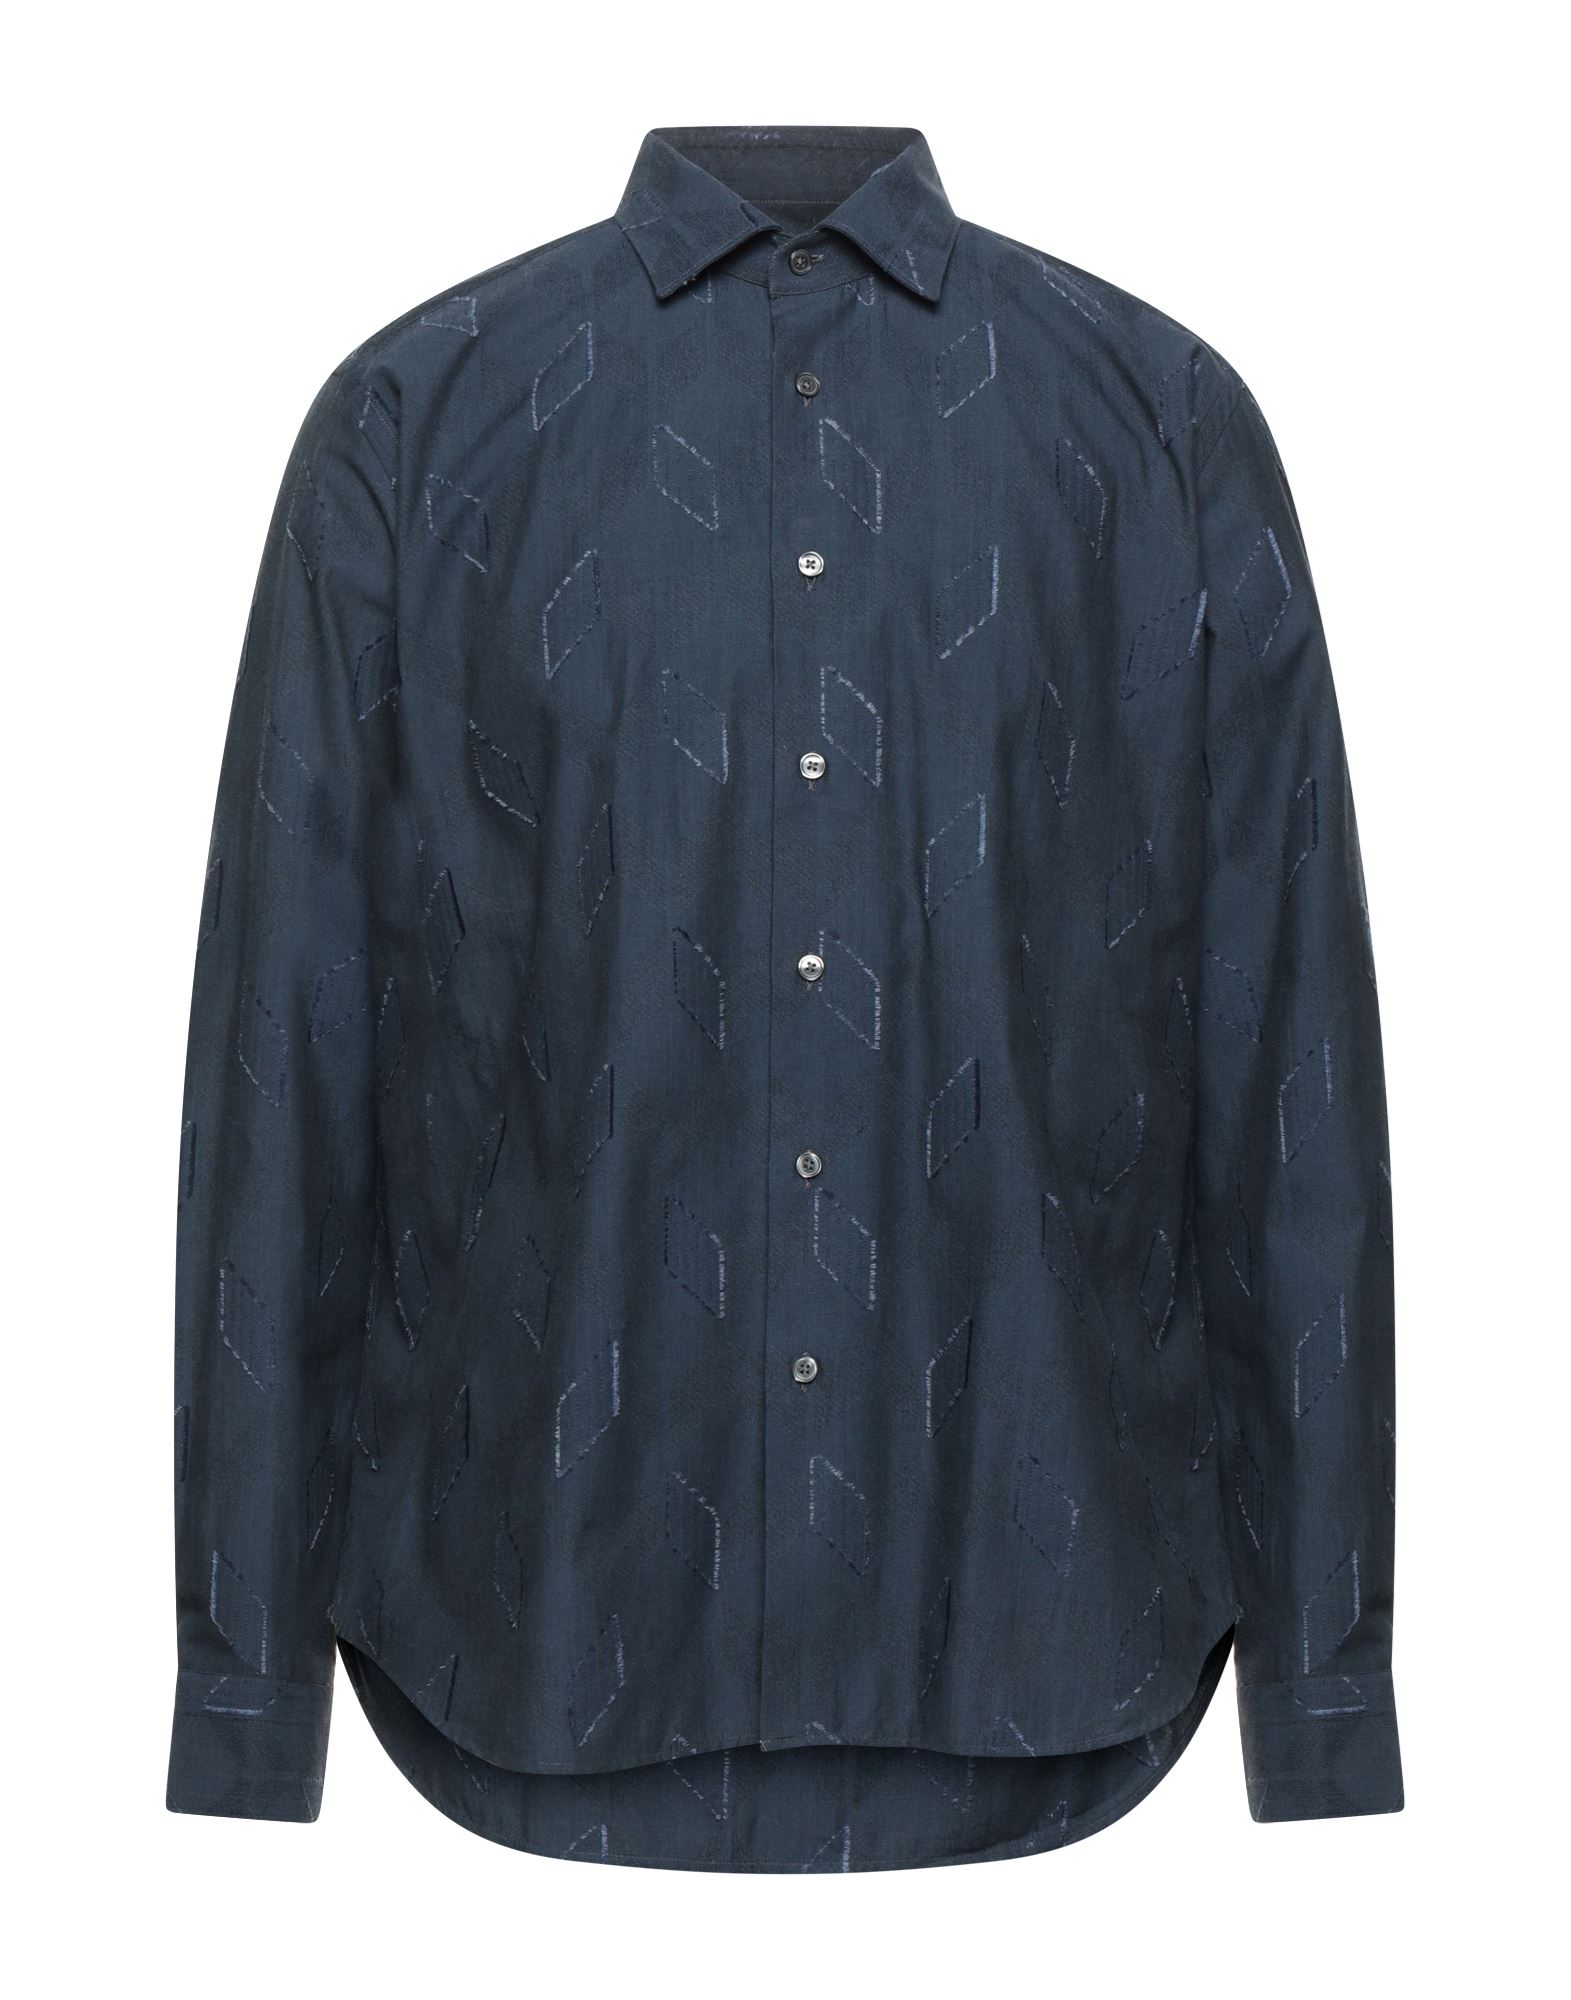 Shop Robert Friedman Man Shirt Midnight Blue Size 15 ¾ Cotton, Modal, Acrylic